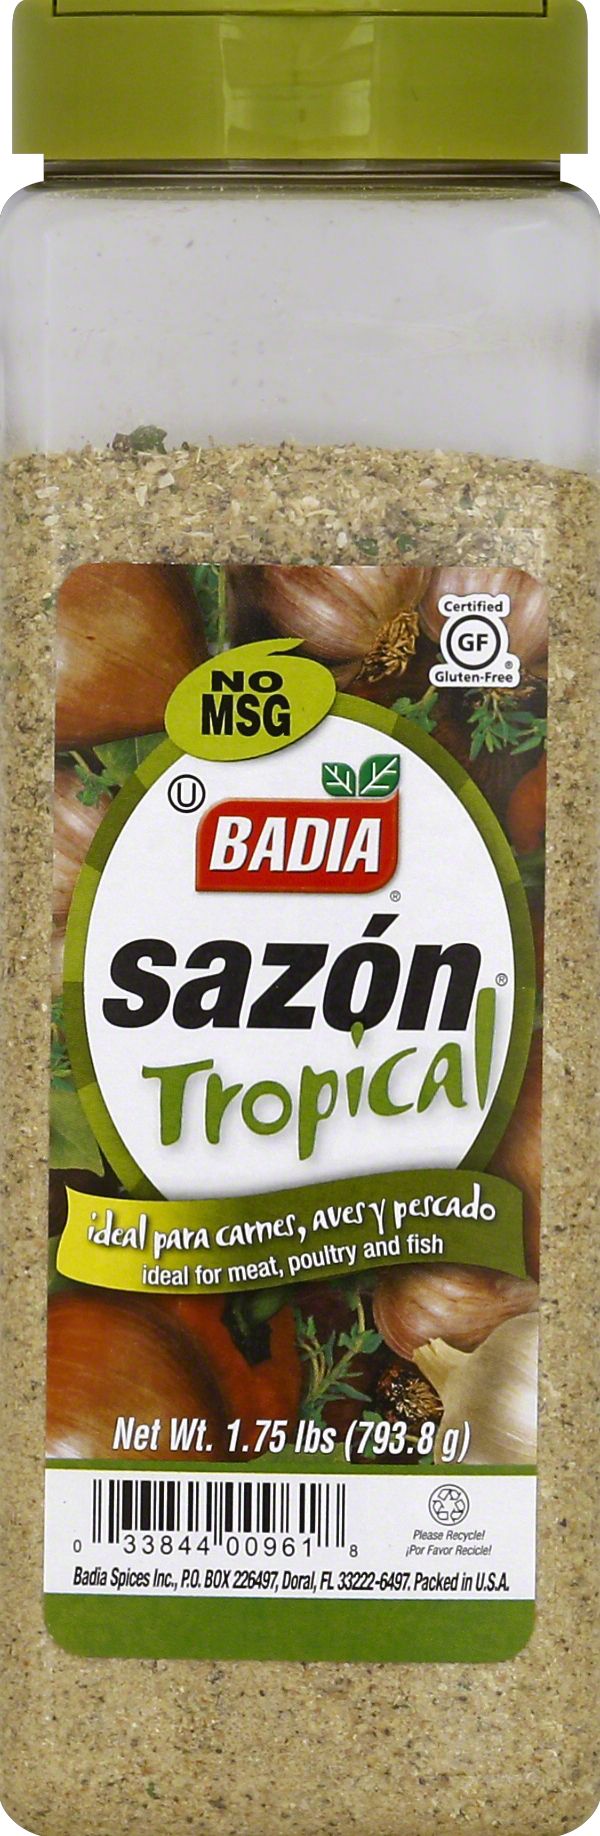 Badia Complete Seasoning, 96 oz